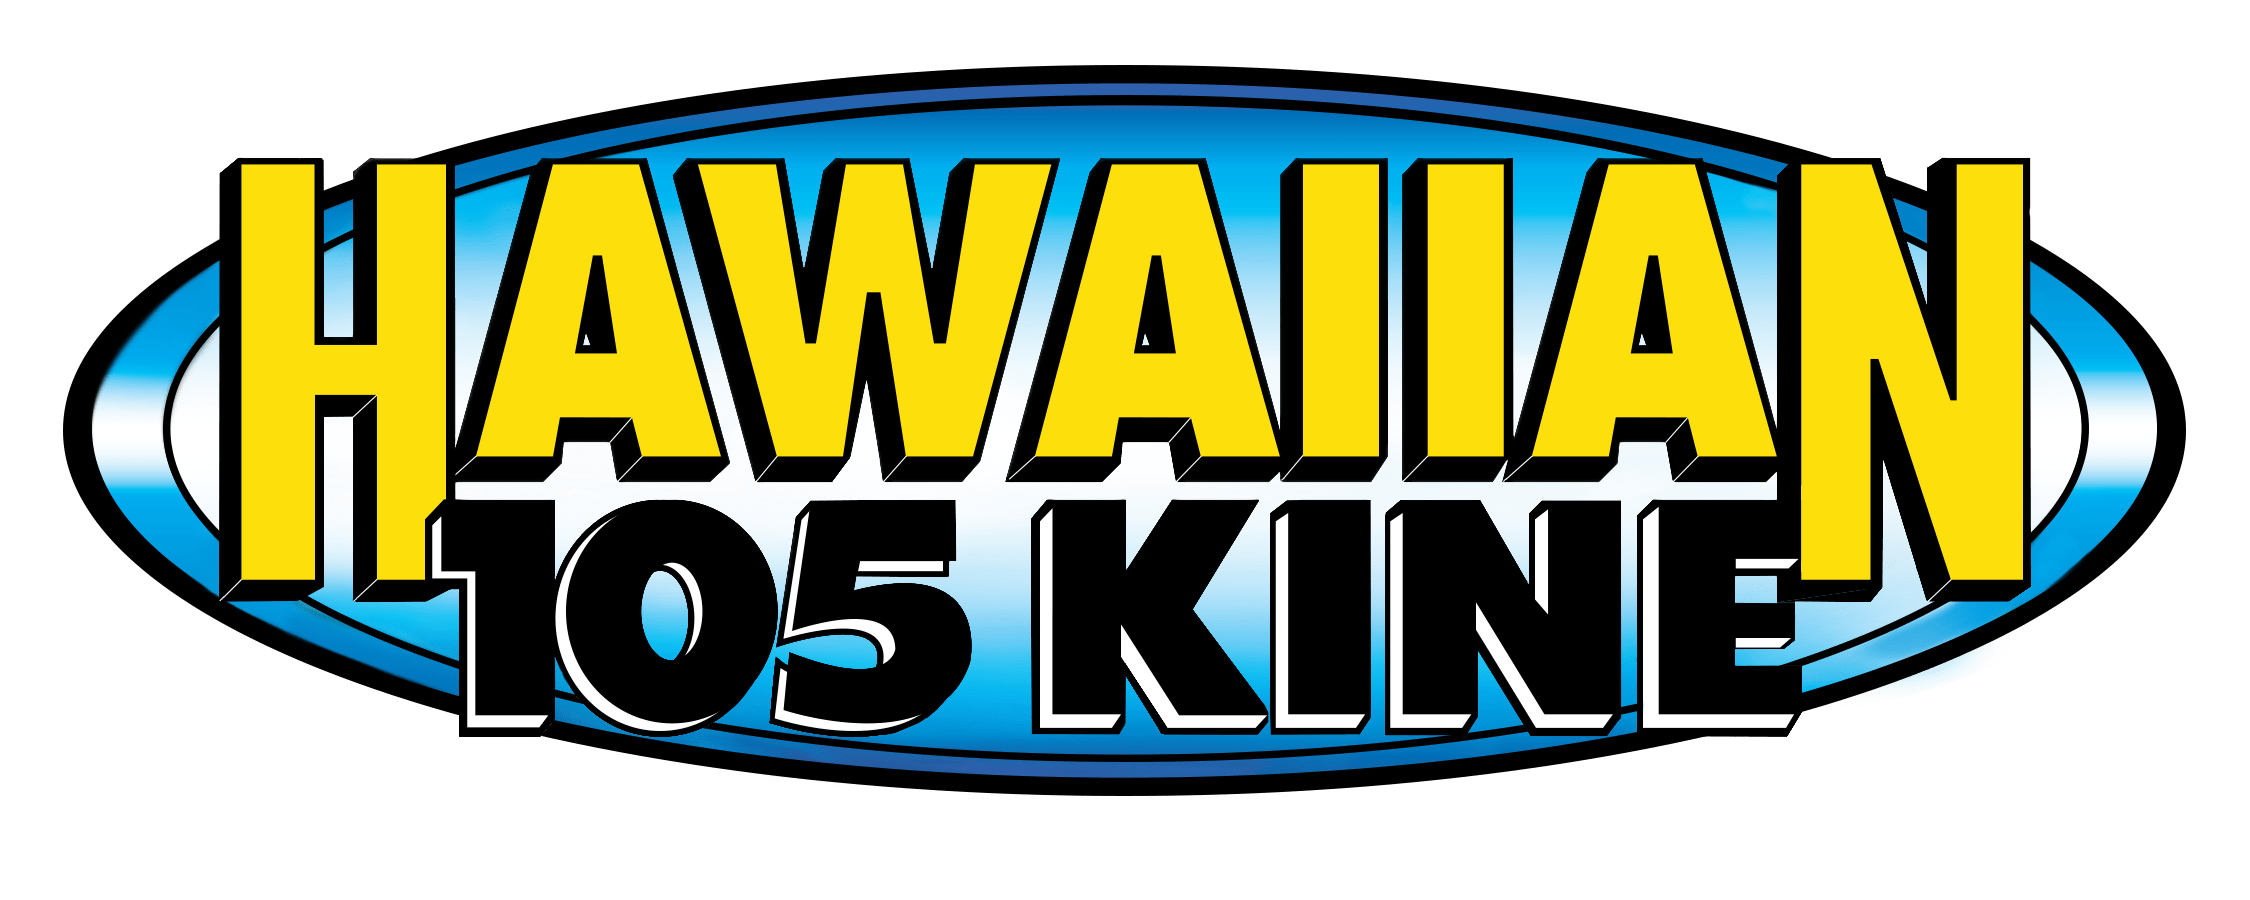 hawaiian-105-kine-final-logo